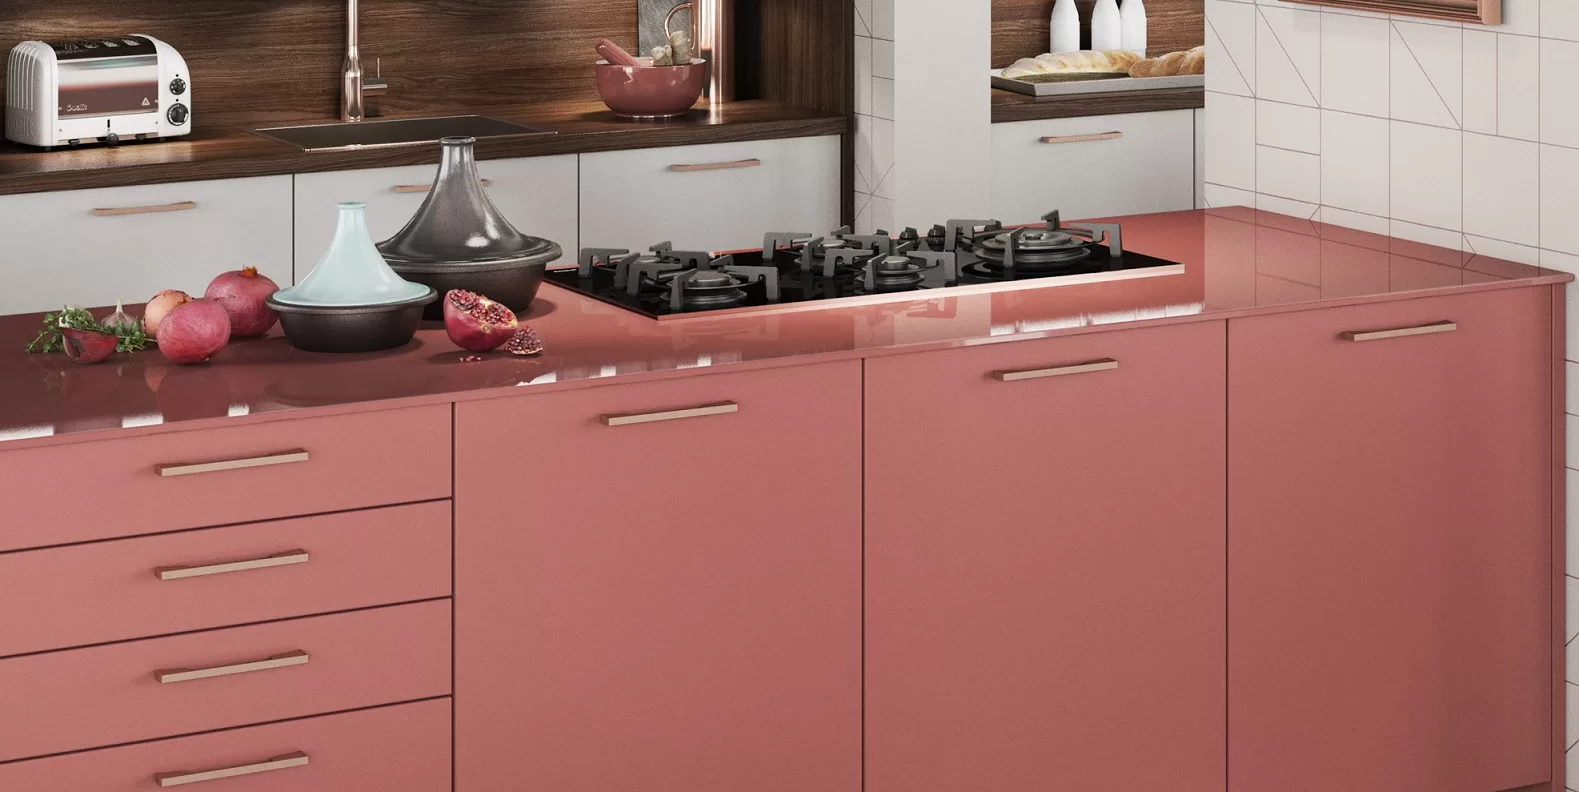 Современная кухня лососево-розового цвета с латунными ручками и столешницей из розового стекла